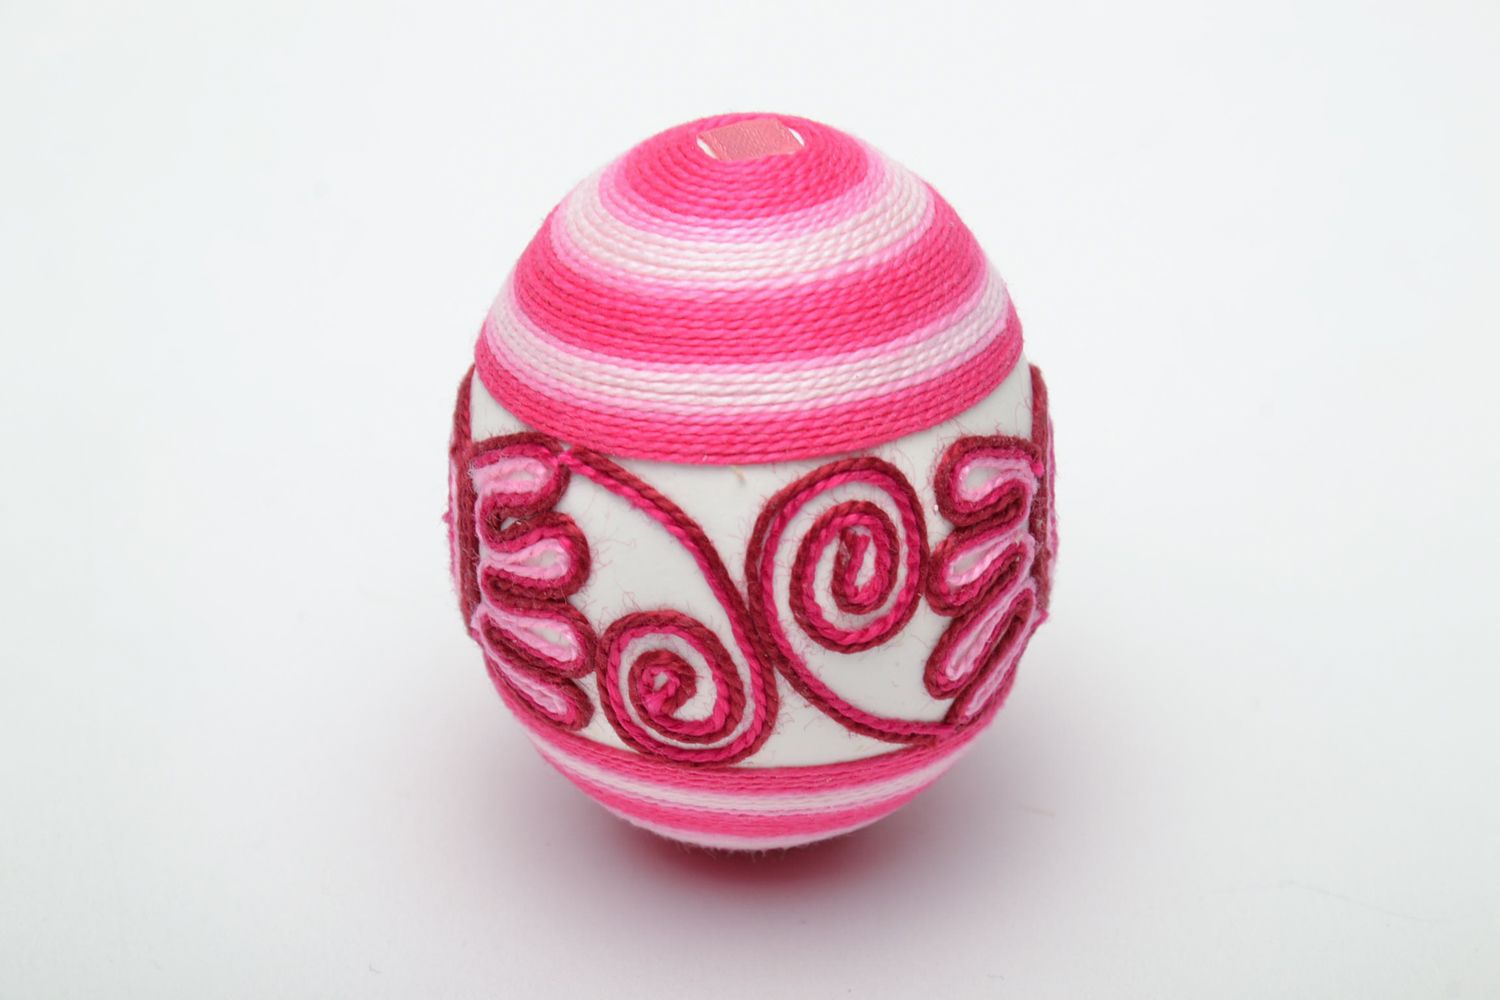 Пасхальное яйцо ручной работы обклеенное шелковыми нитками фото 3